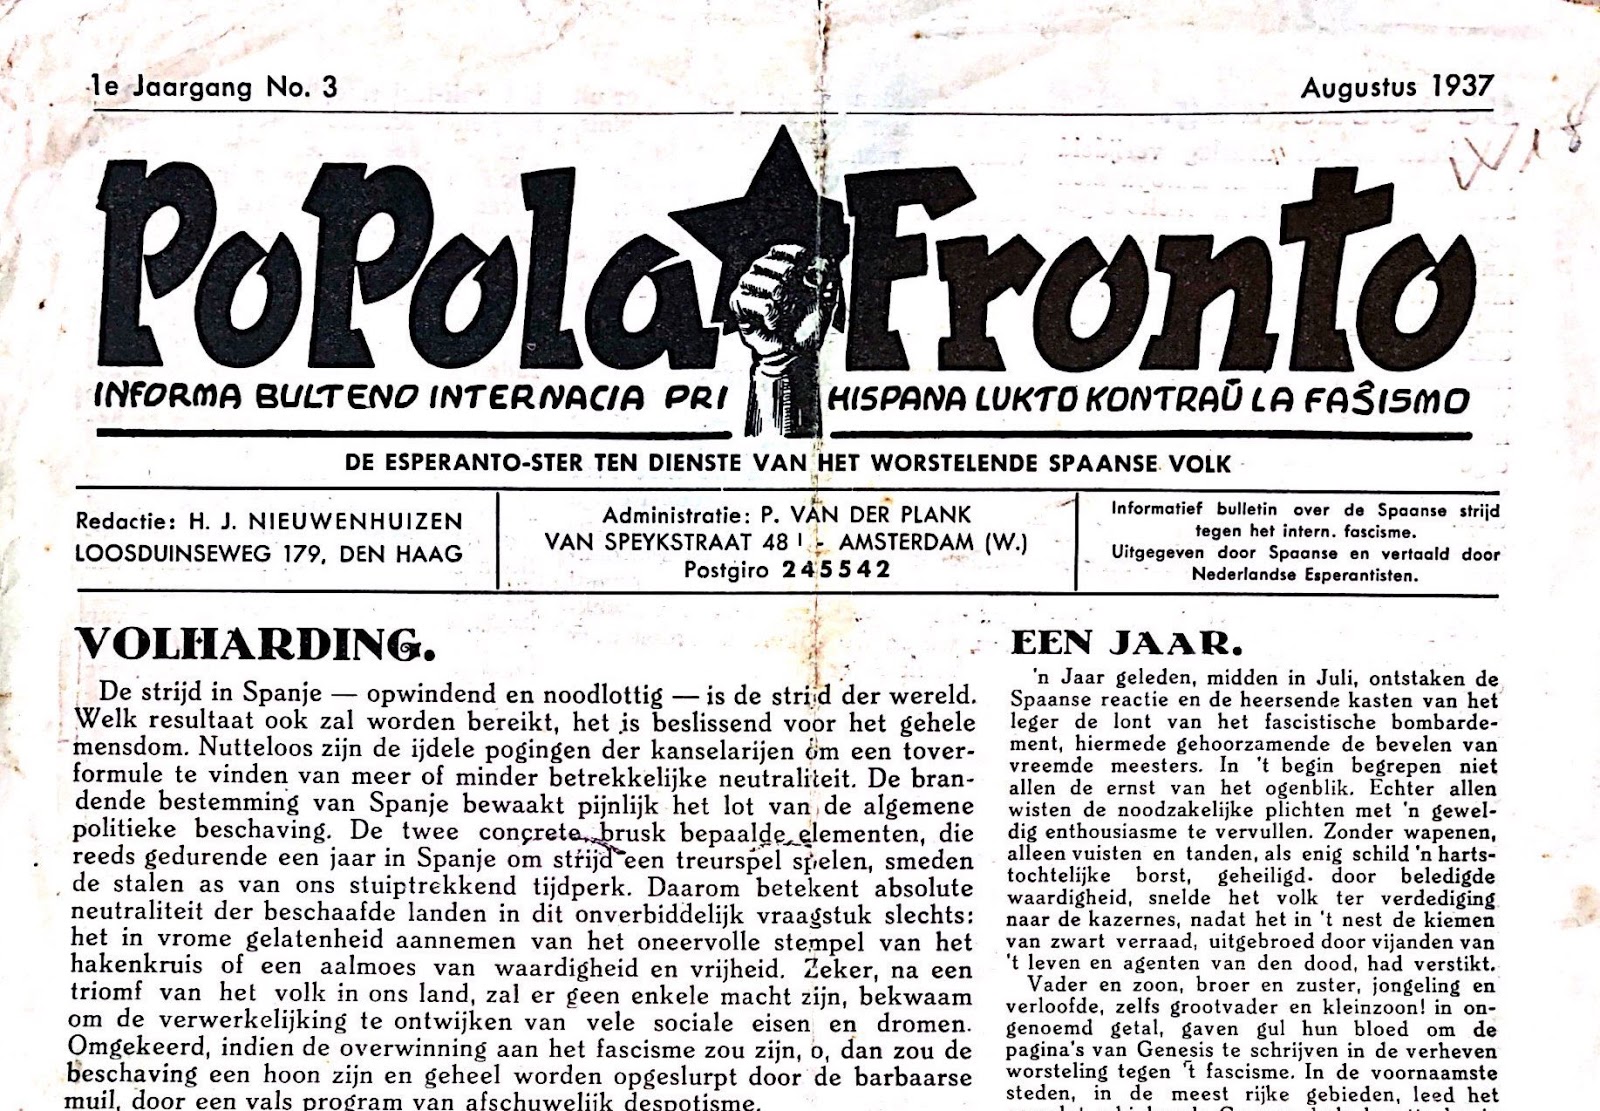 Entute 13 numeroj de la nederlanda traduko de <em>Popola Fronto</em> aperis inter 1937 kaj 1938 (Biblioteko Molera)